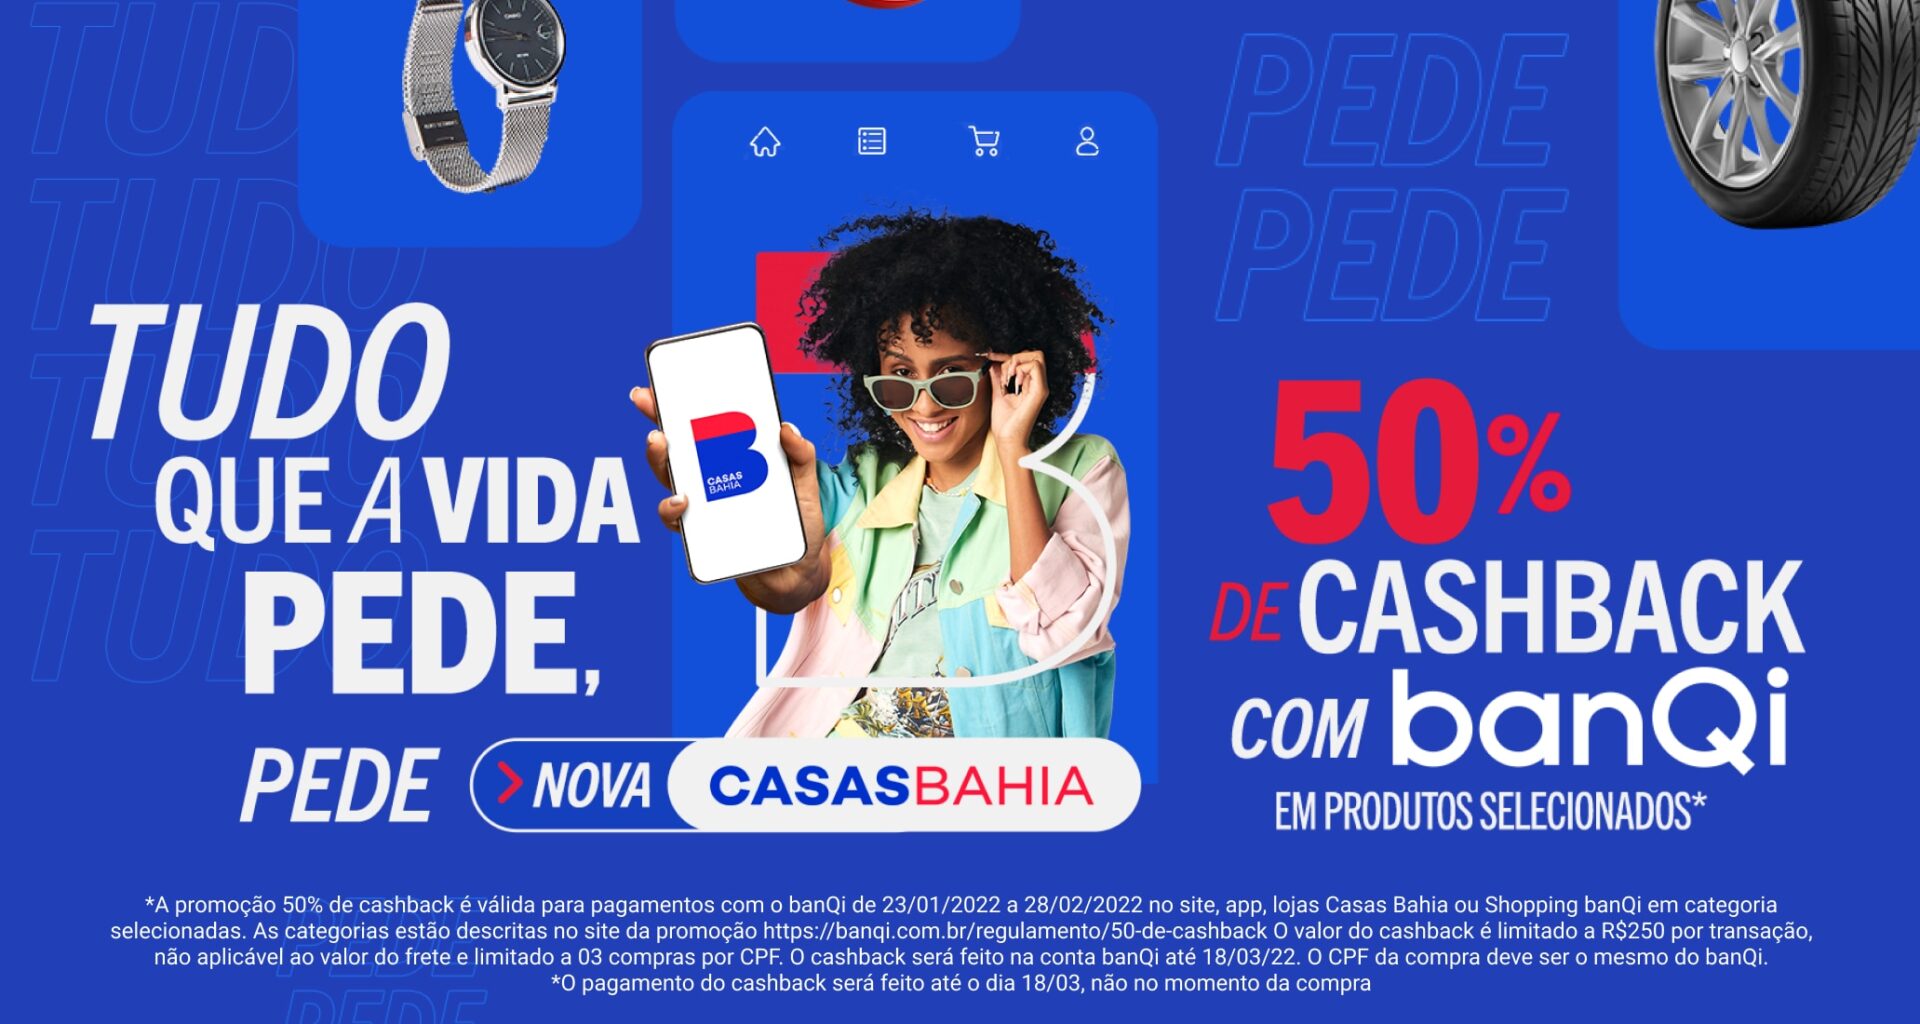 Campanha "Tudo que a vida pede, pede Casas Bahia"